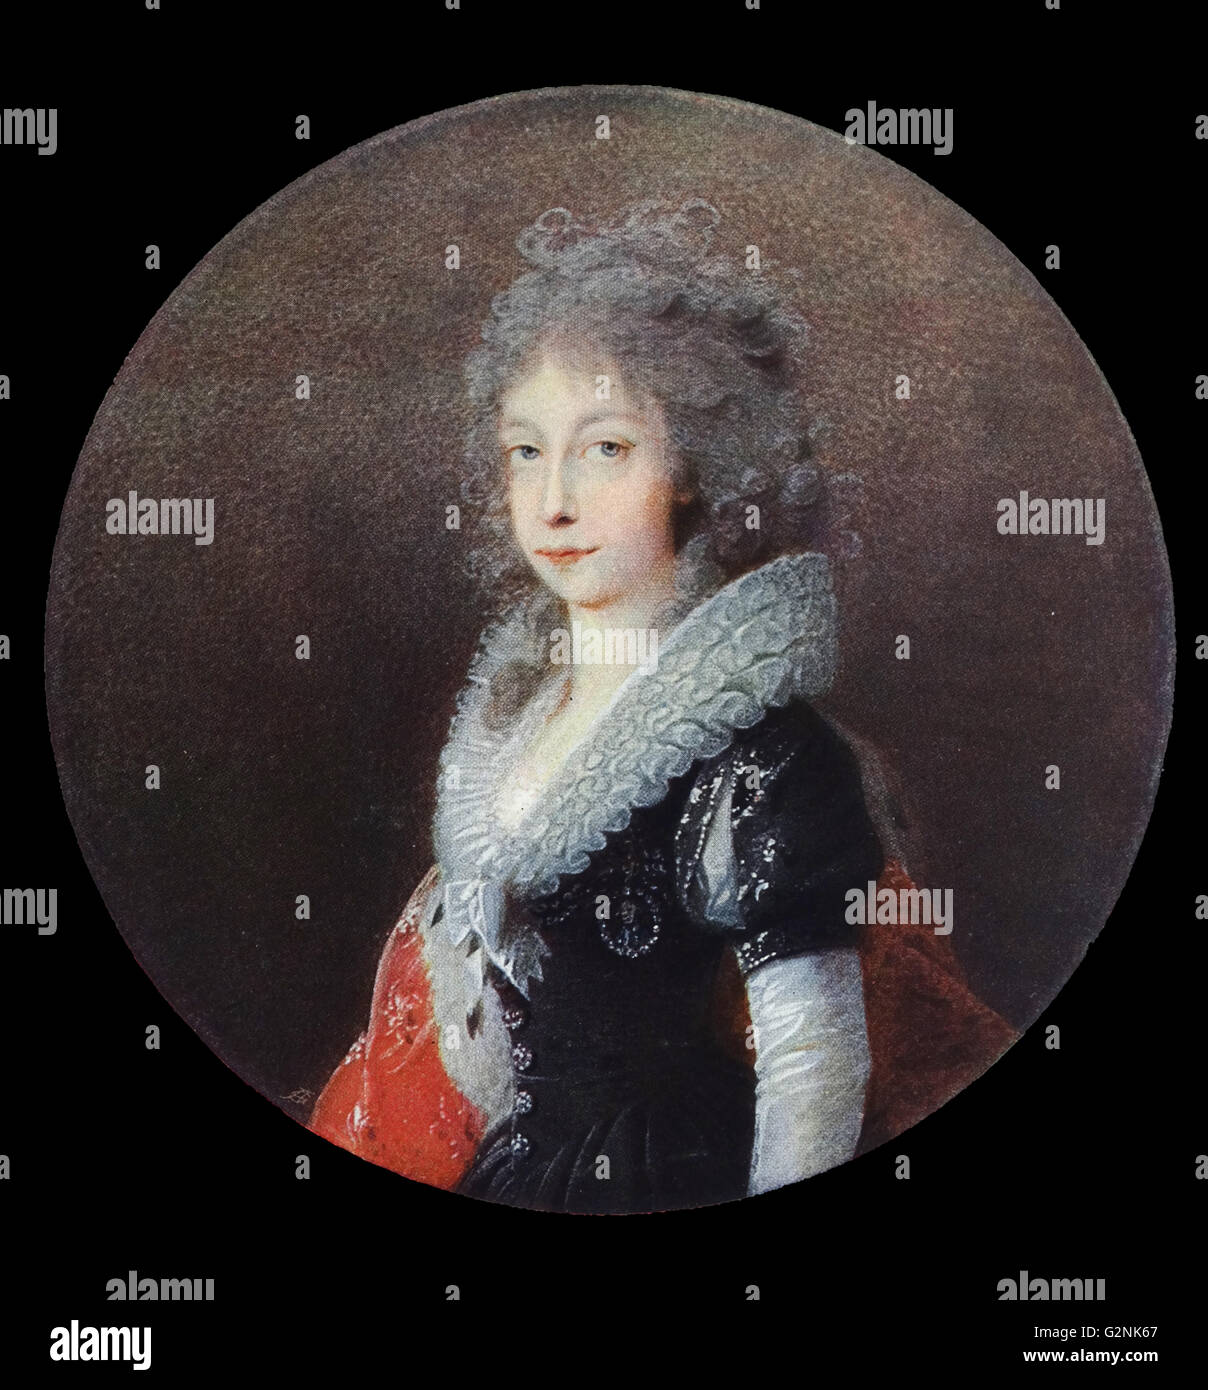 L'Imperatrice Maria Theresia, (1717-1789) seconda moglie dell'Imperatore Francesco 1 dell'Austria da Heinrich Friedrich Fuger (1751-1818) Tedesco ritratto storico e pittore. Foto Stock